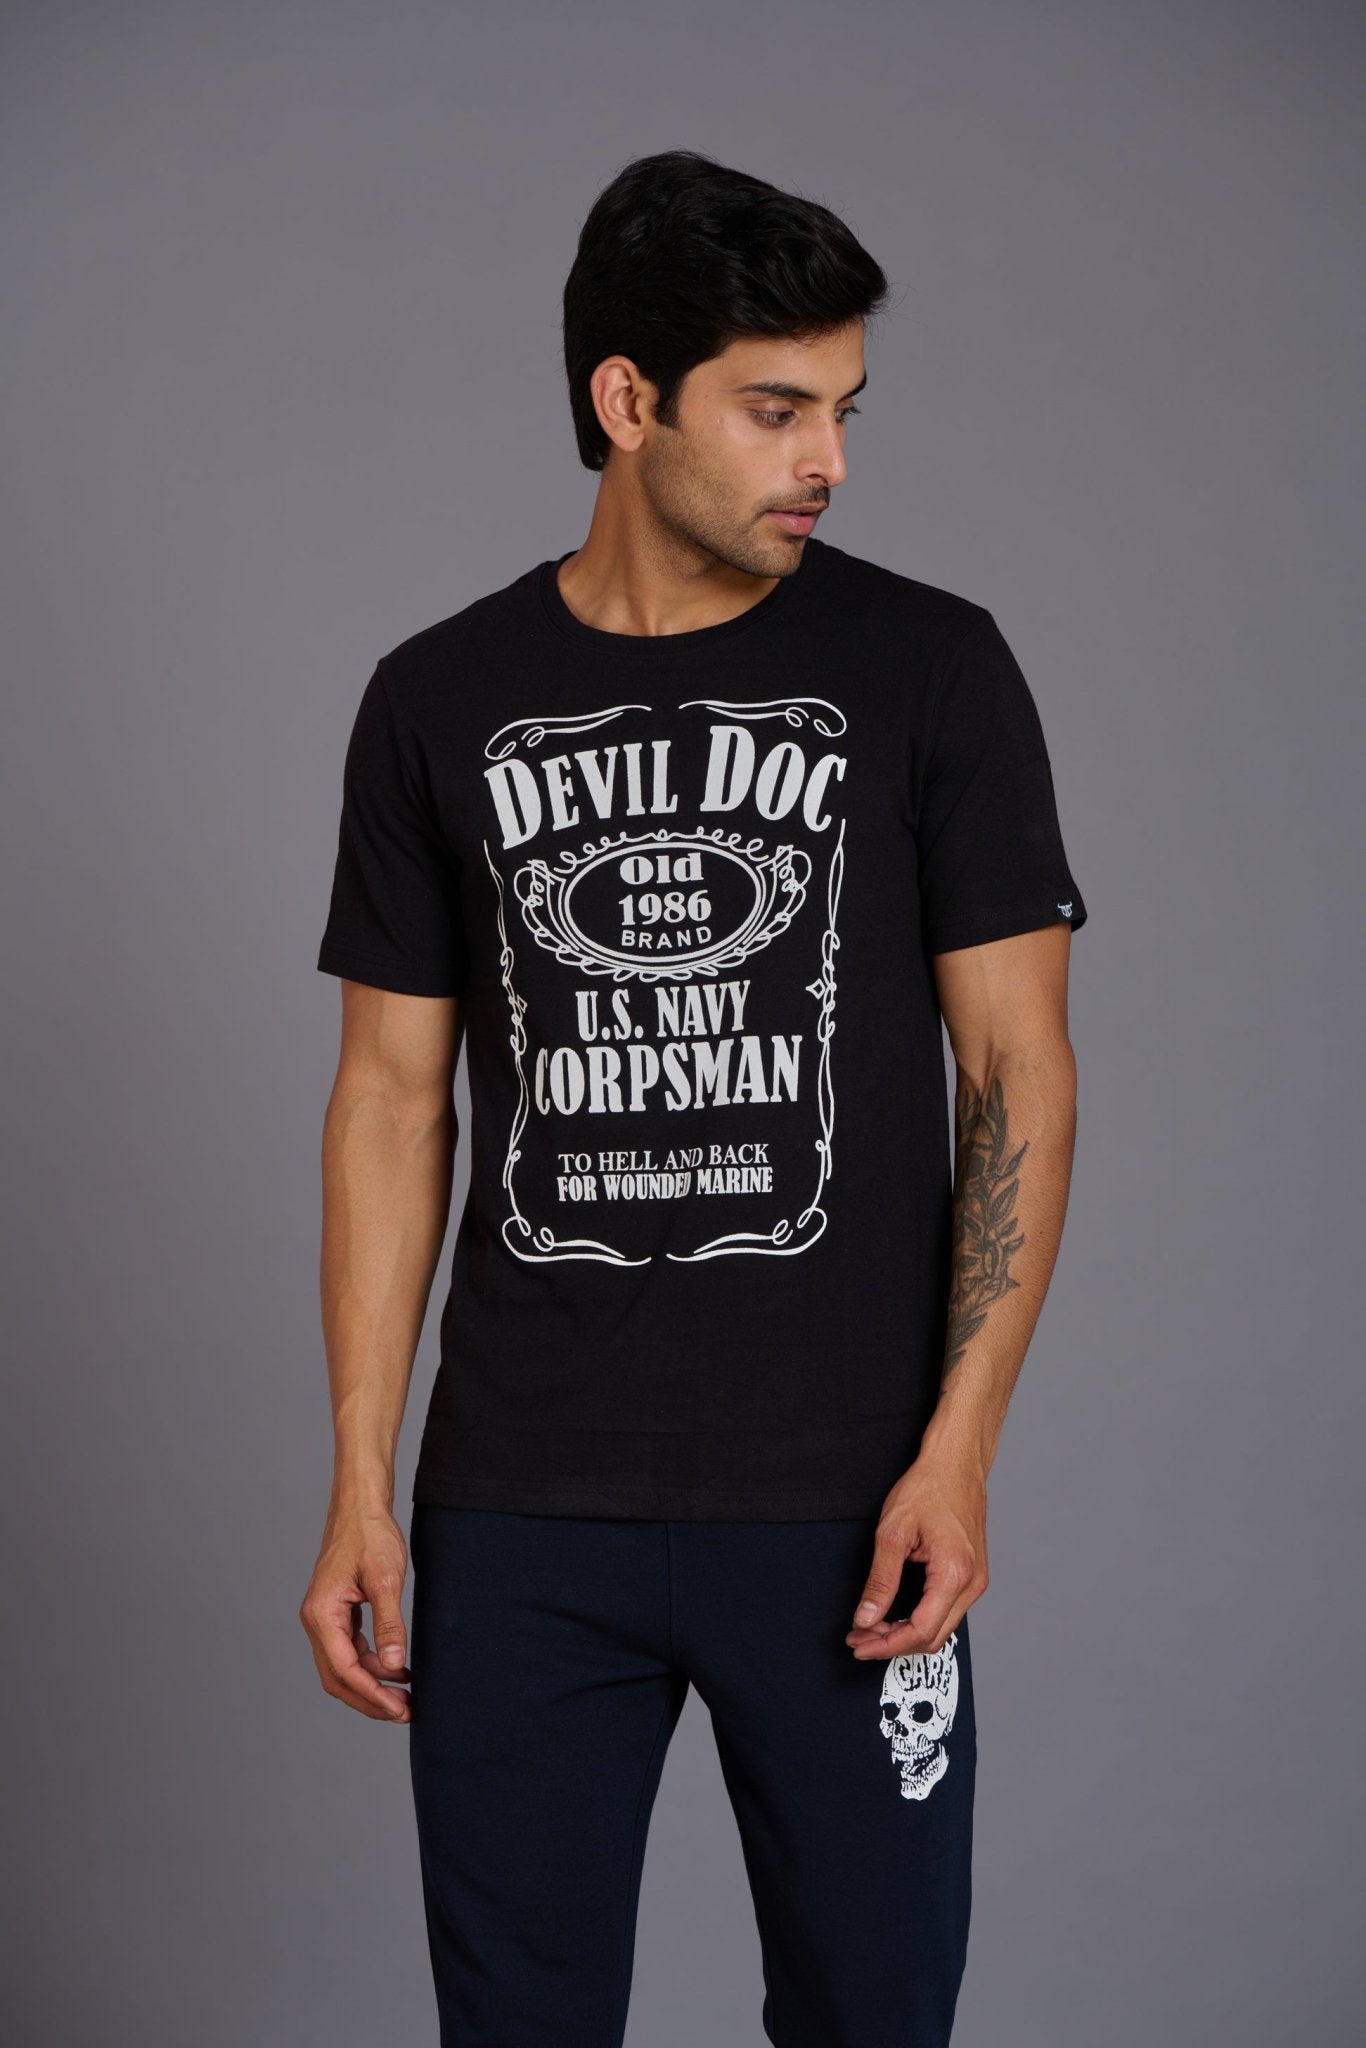 Devil Doc Printed Black T-Shirt for Men - Go Devil